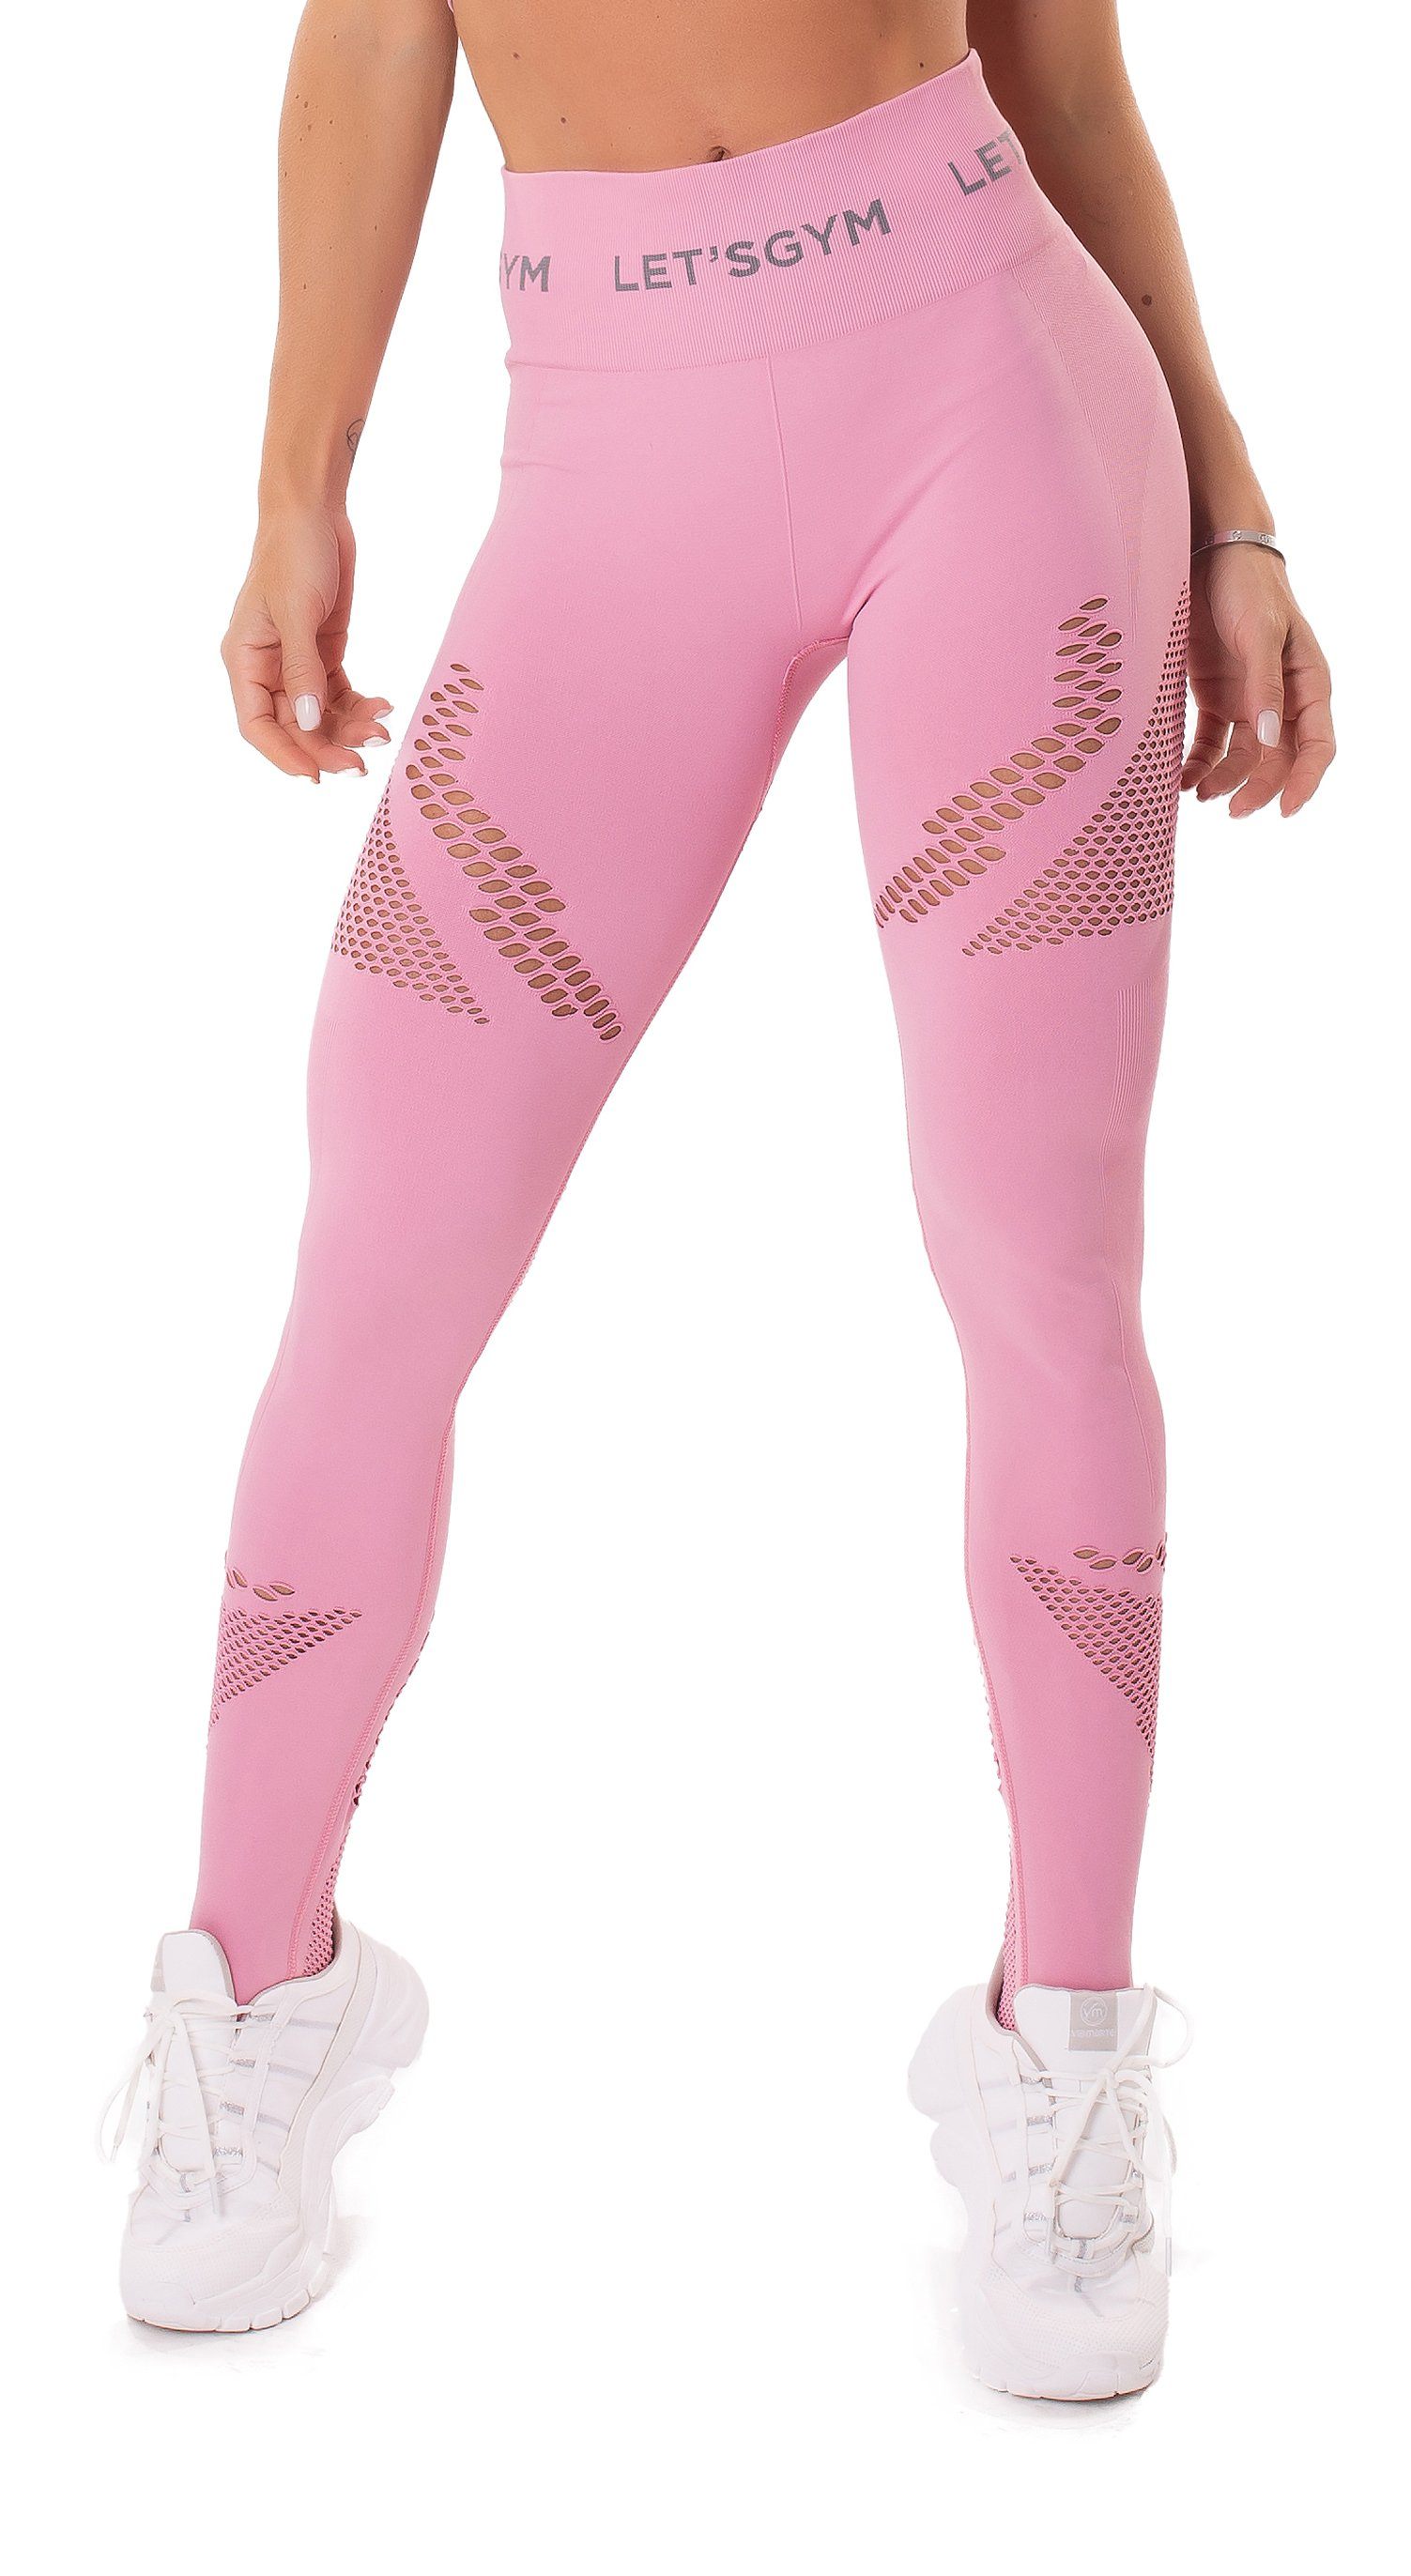 Women's High Waist, Full Length Leggings - Seamless Essence Legging Light  Pink